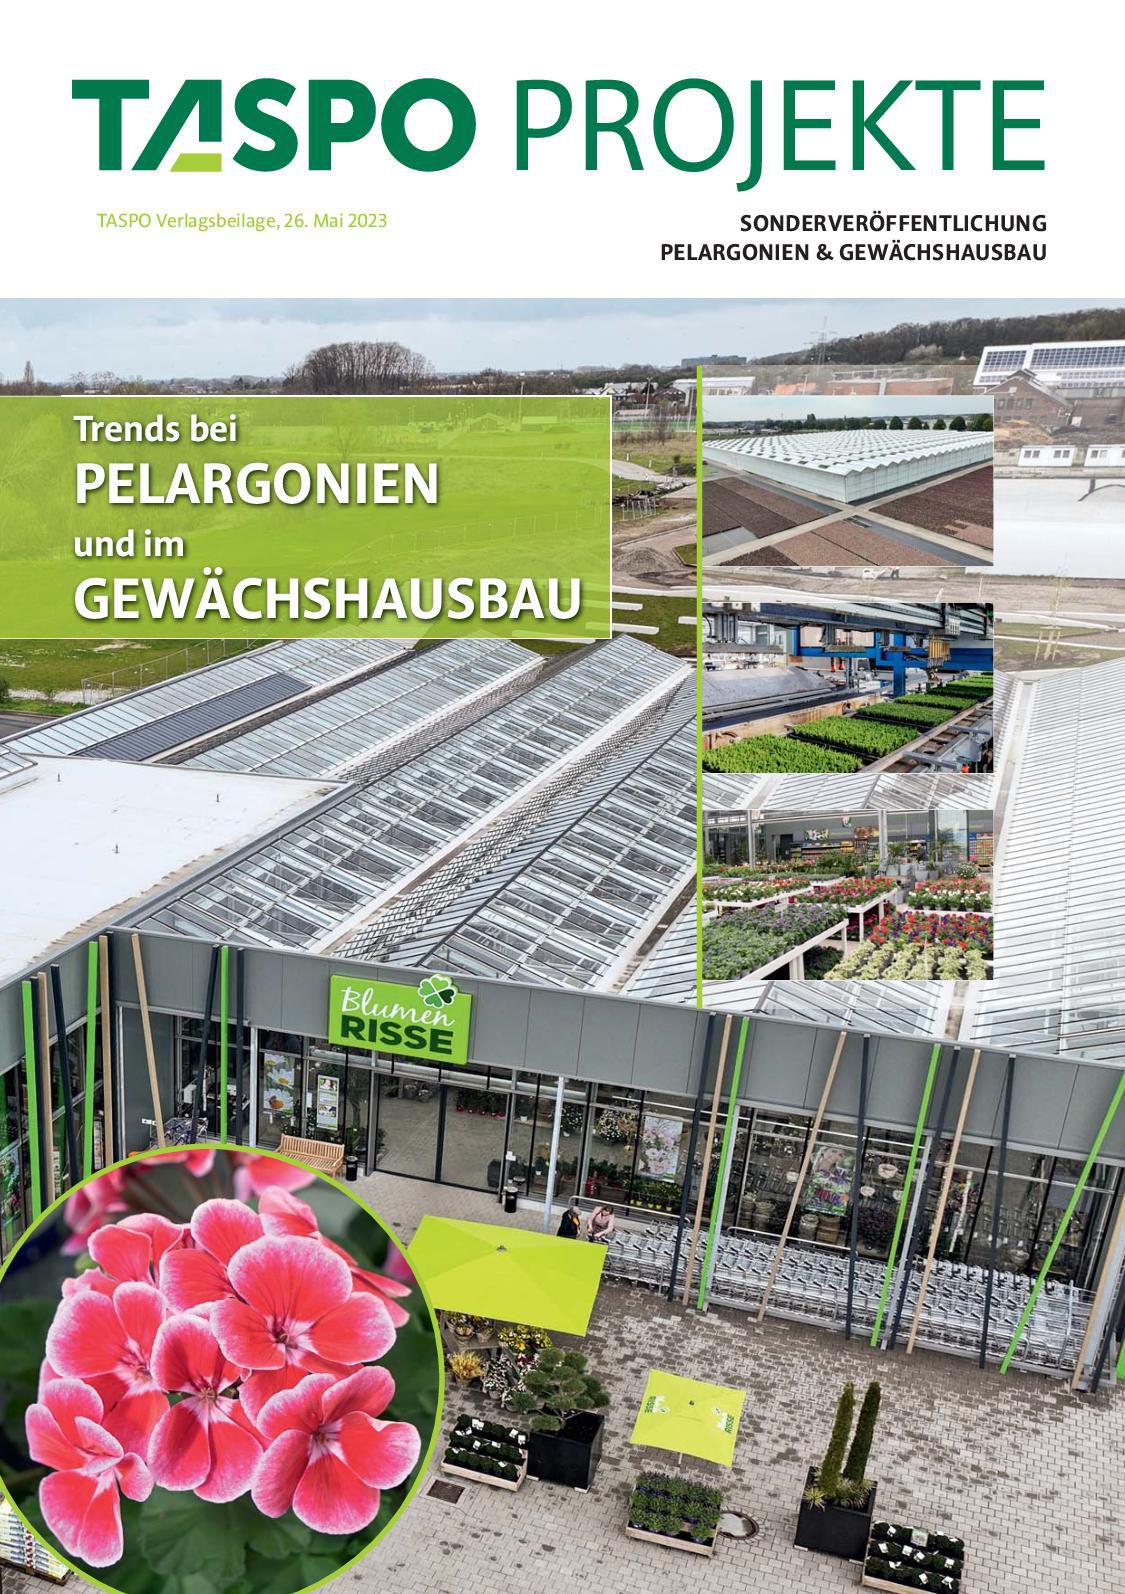 TASPO Projekte „Pelargonien & Gewächshausbau"